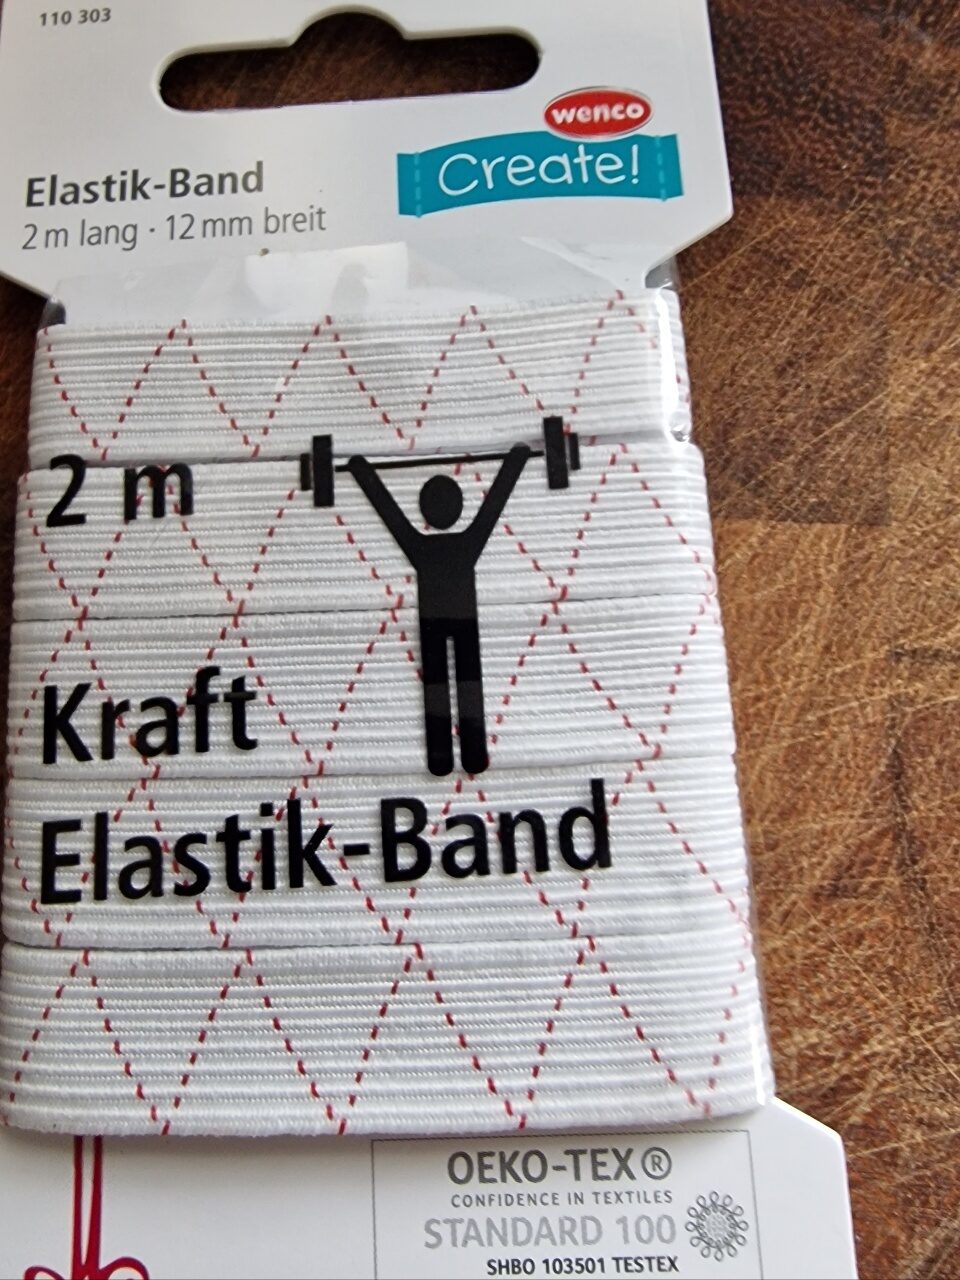 Elasttik Band - Produkt - de